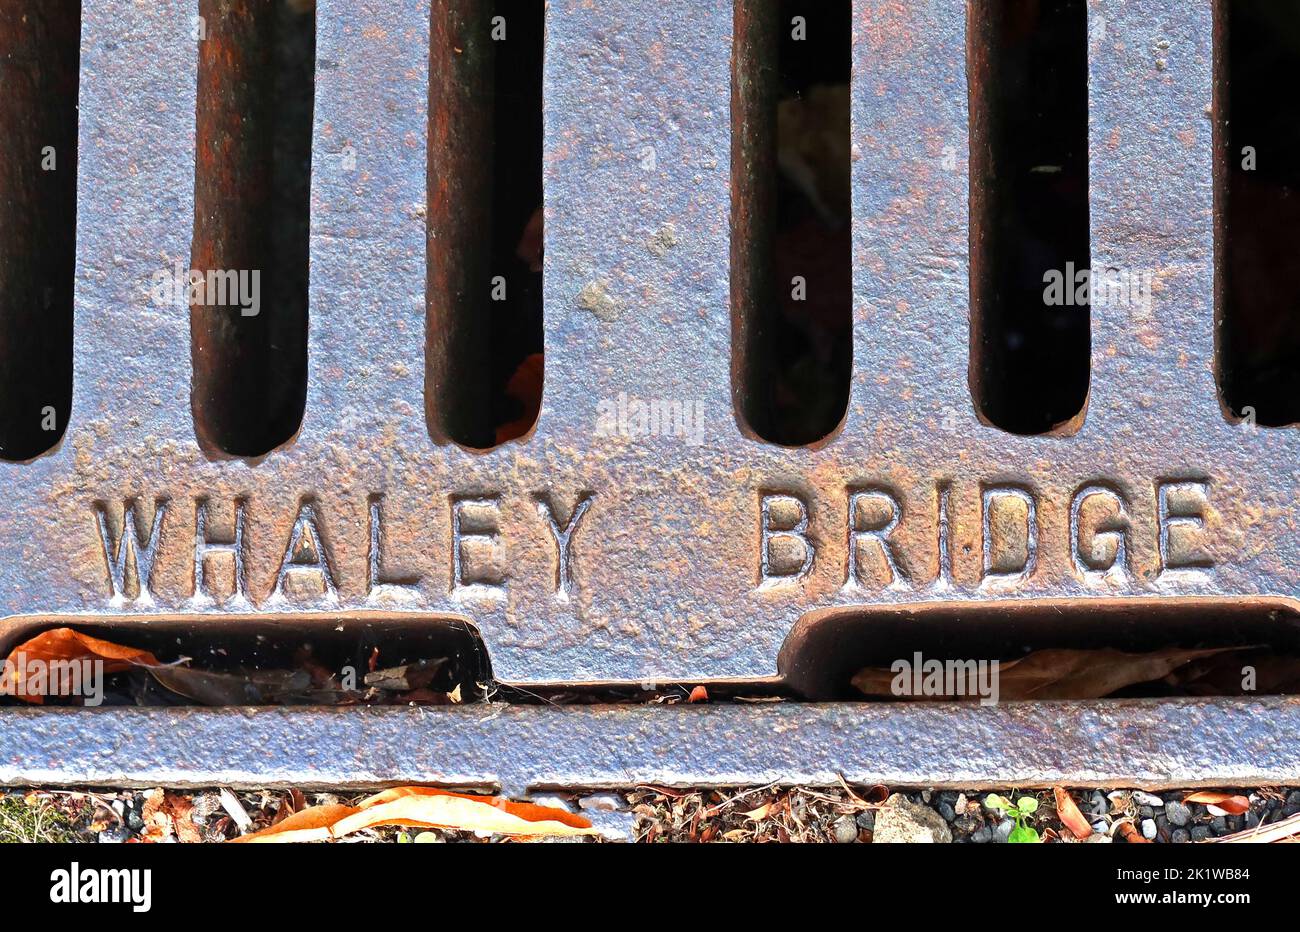 Griglia in ghisa arrugginita goffrata, con stampa Whaley Bridge, High Peak, Derbyshire, Inghilterra, Regno Unito, SK23 7AA Foto Stock